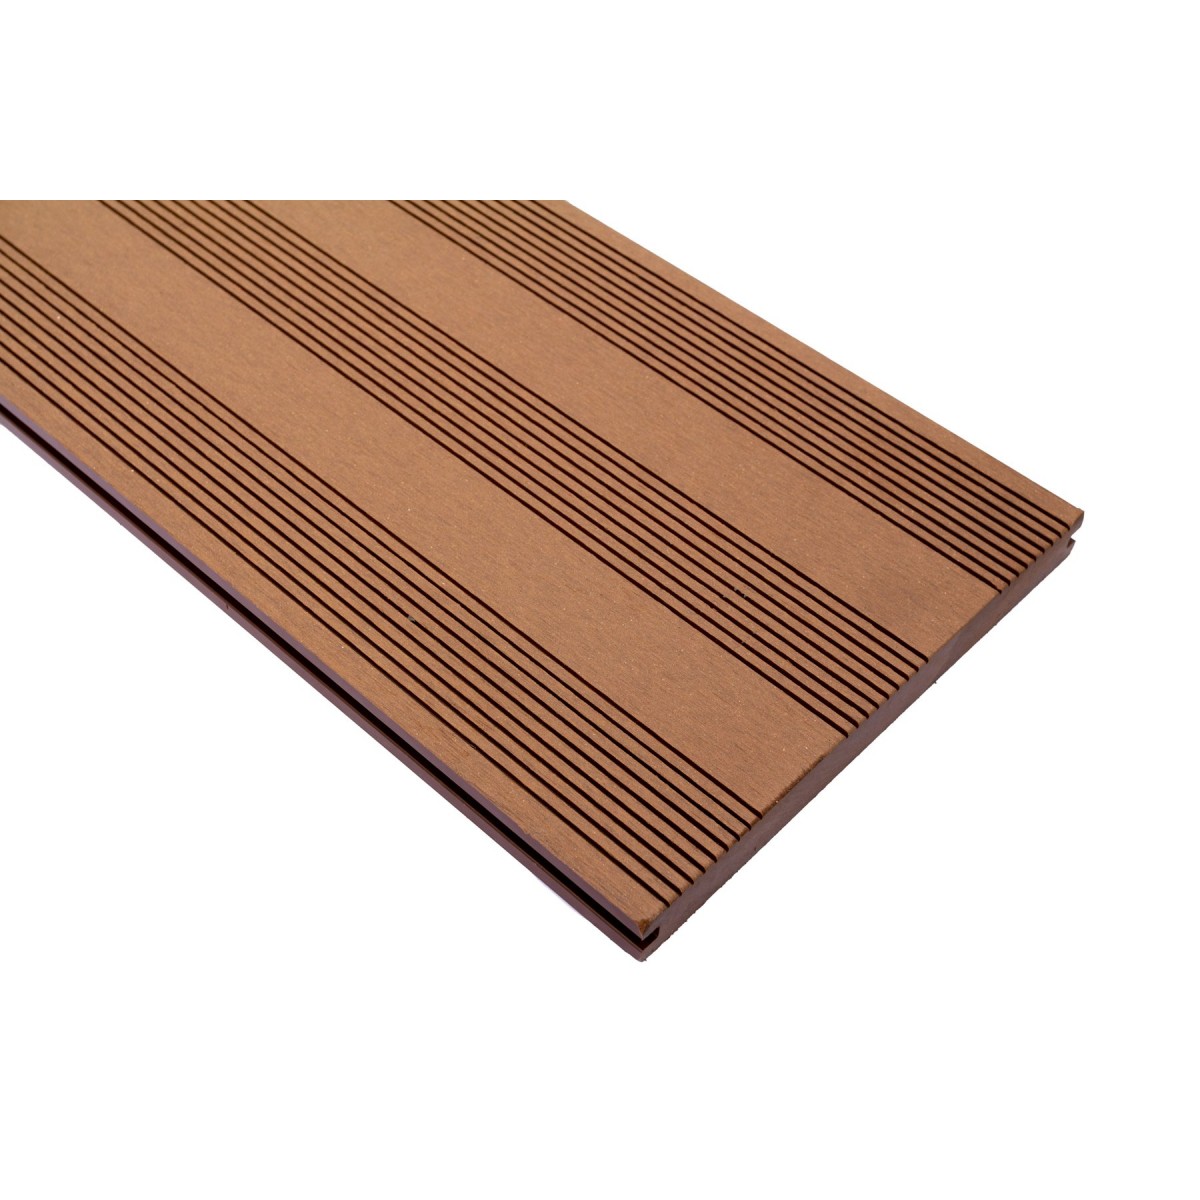 Vareprøve Terrassebord kompositt Wideplank massiv brun 22cm bredde